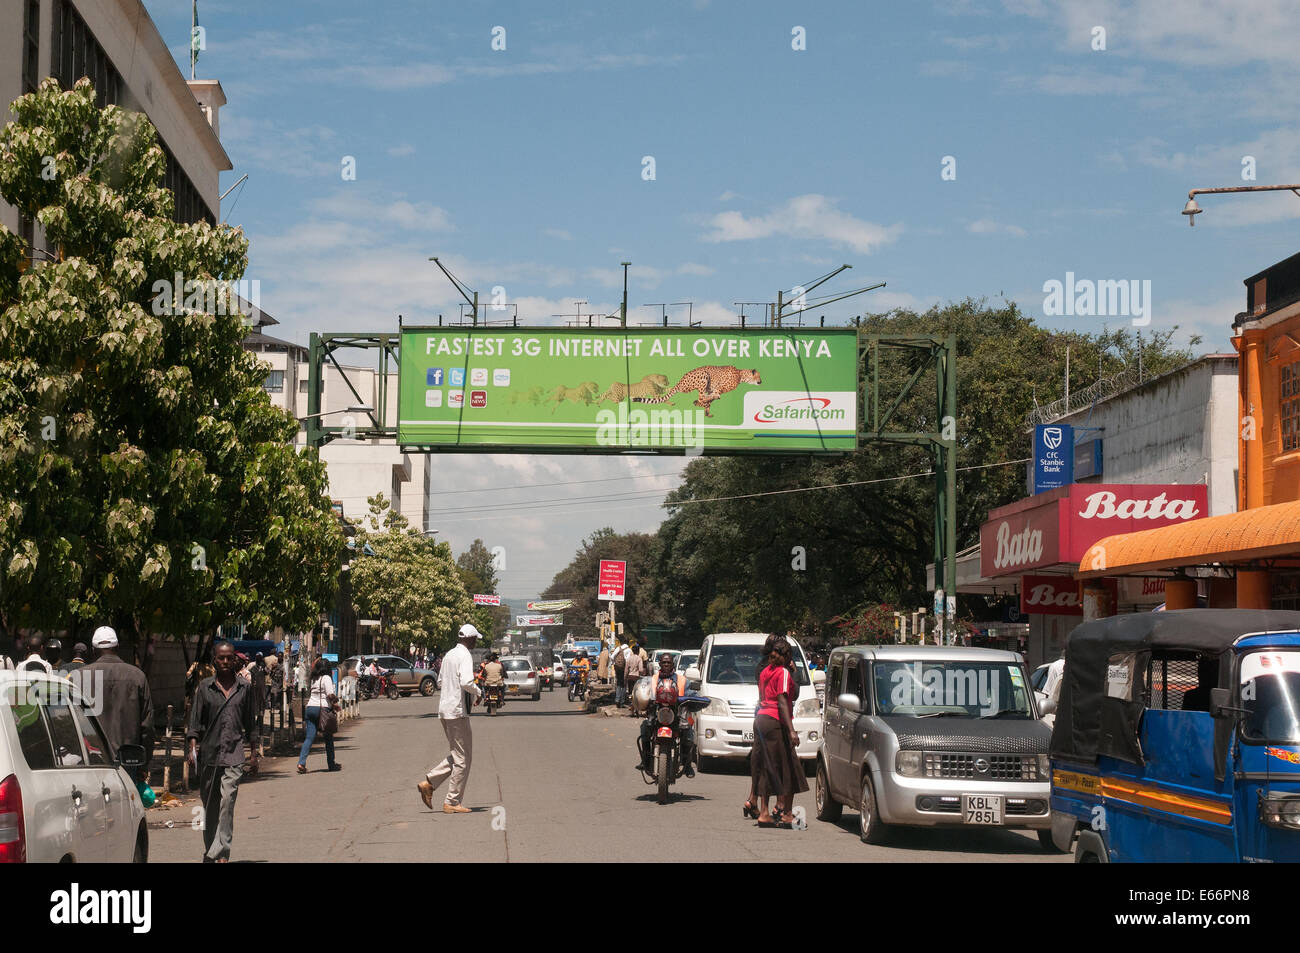 La gente y el tráfico en la avenida Kenyatta Nakuru, Kenya África oriental con el acaparamiento de publicidad para red 3G Foto de stock